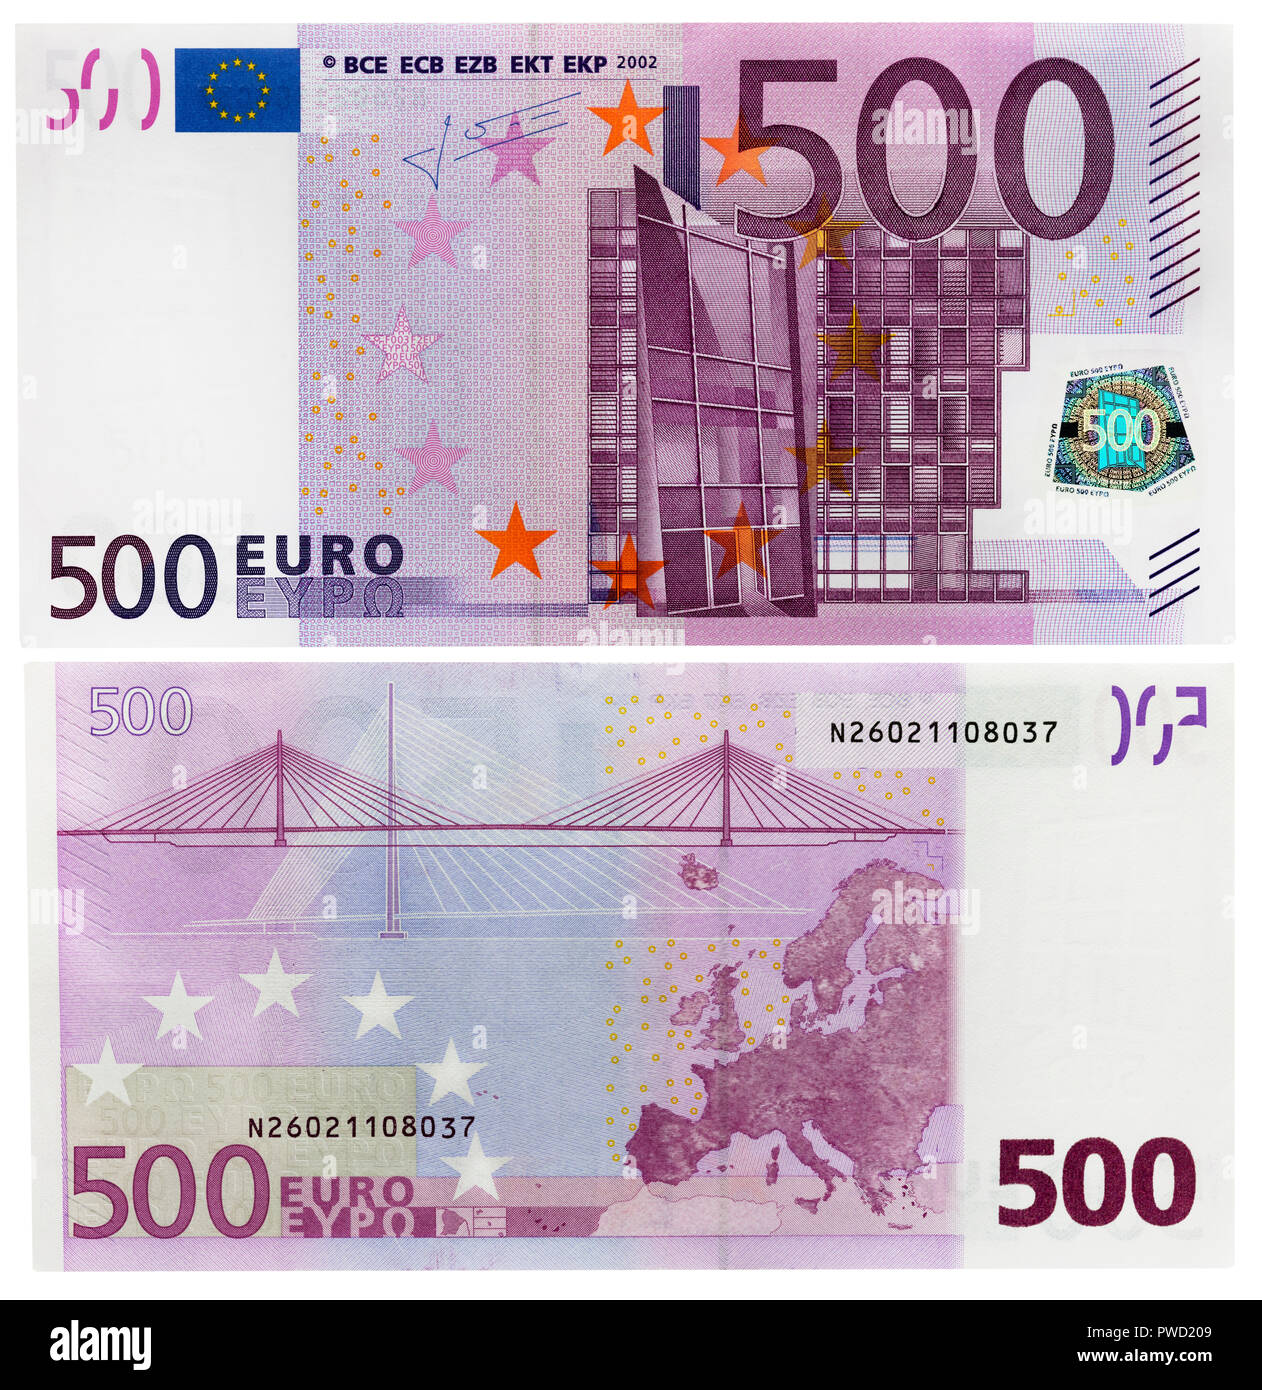 Recto verso billet de 500 euros Banque de photographies et d'images à haute  résolution - Alamy